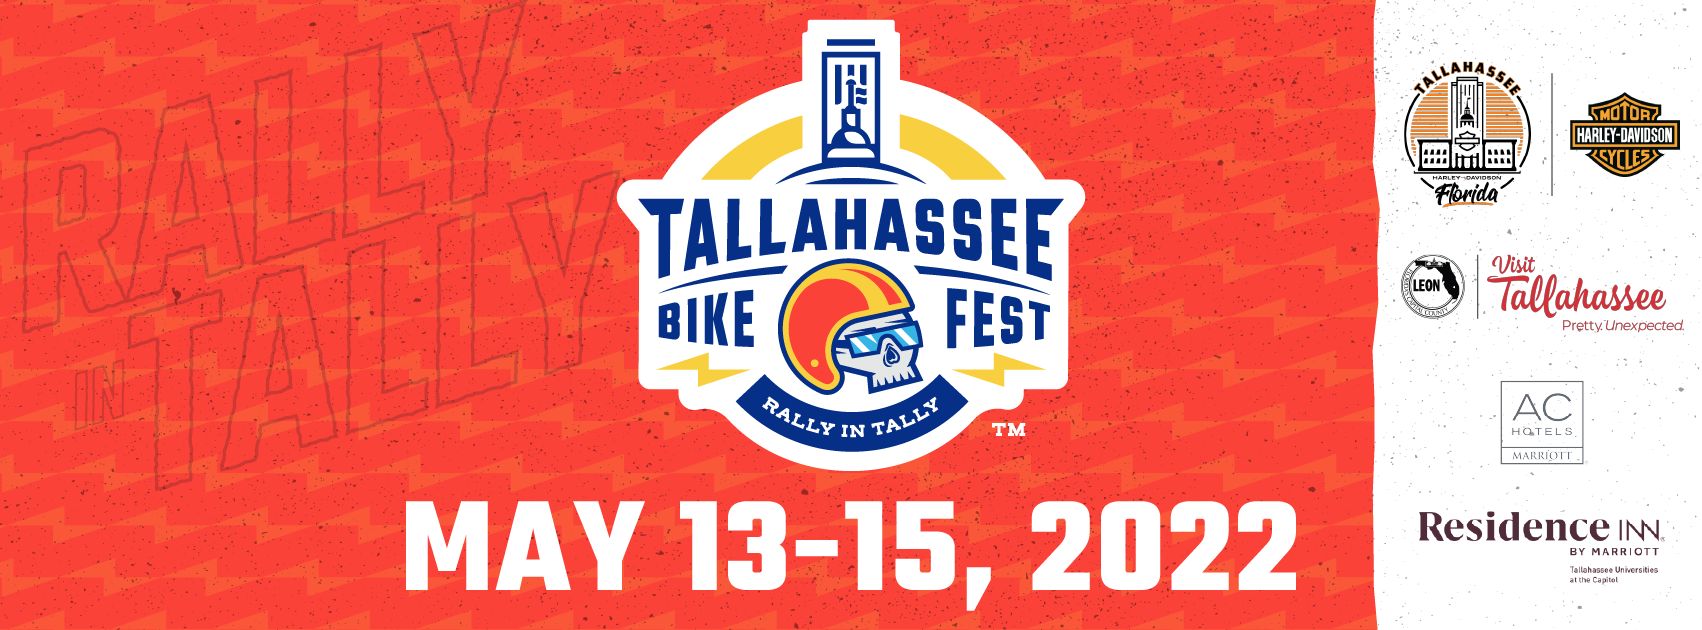 Tallahassee Bike Fest, Tallahassee, Florida, United States